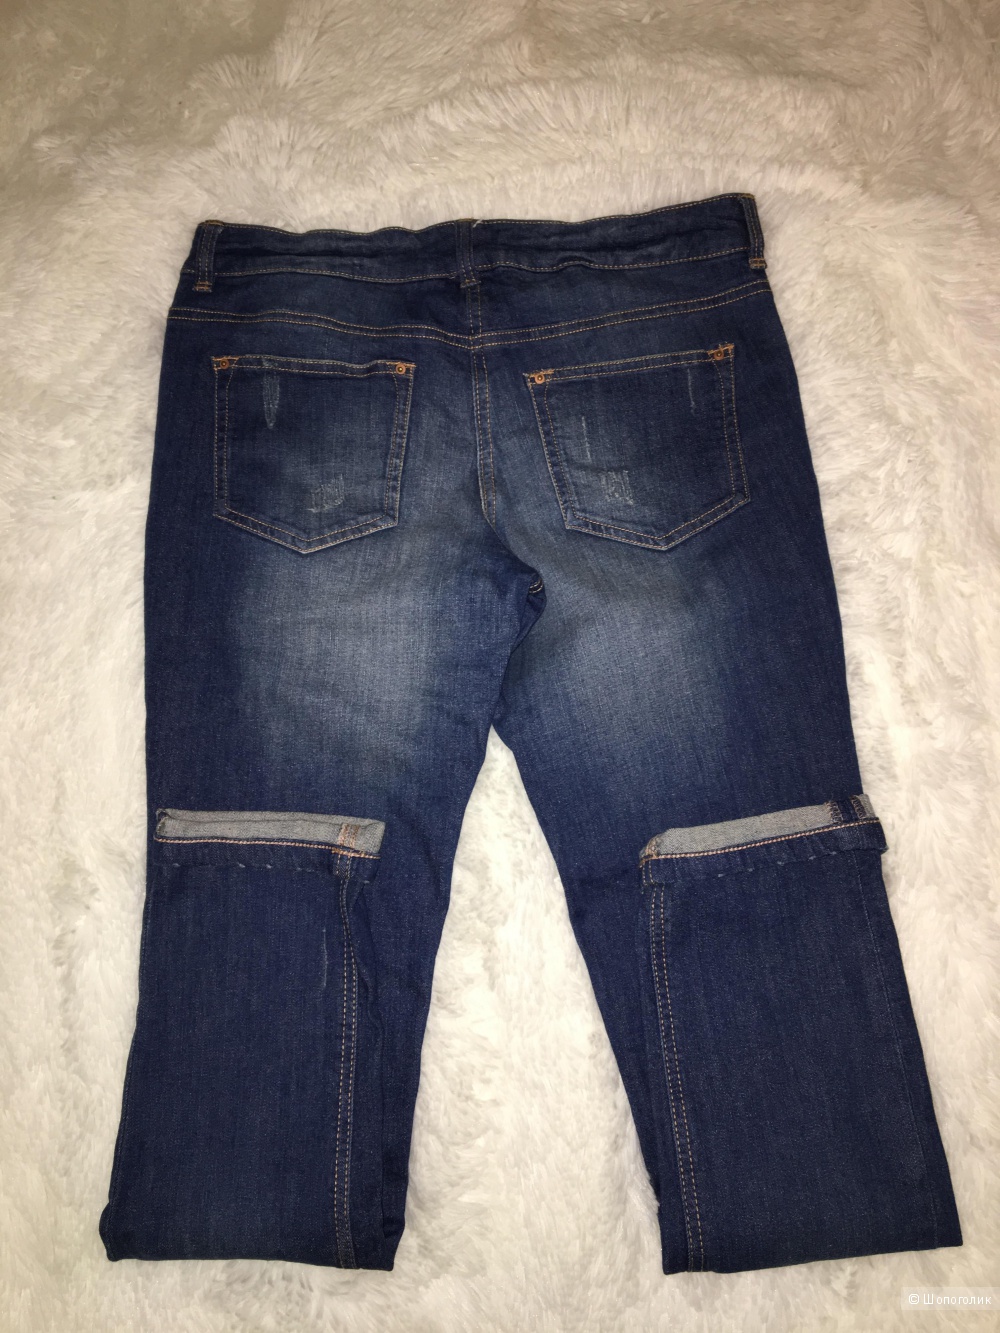 Комплект джинсы/Papaya + топ/Zara + футболка Stefanel, размер S